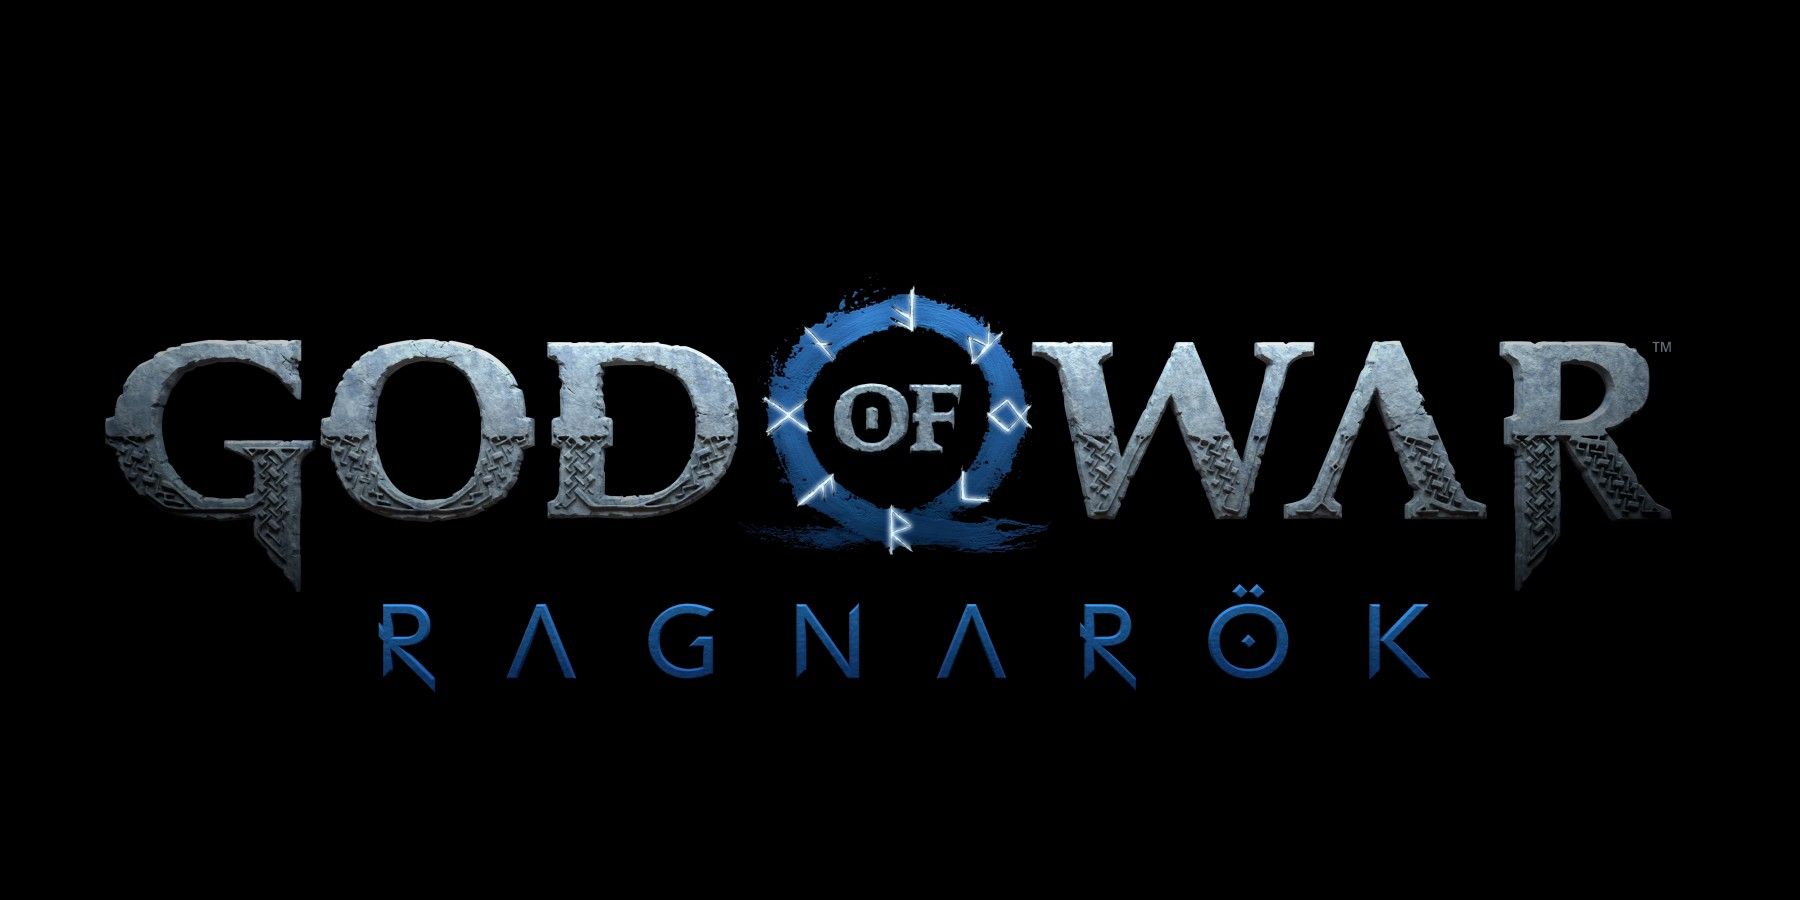 Director de arte de God of War Ragnarok dice ‘aún no has visto nada’